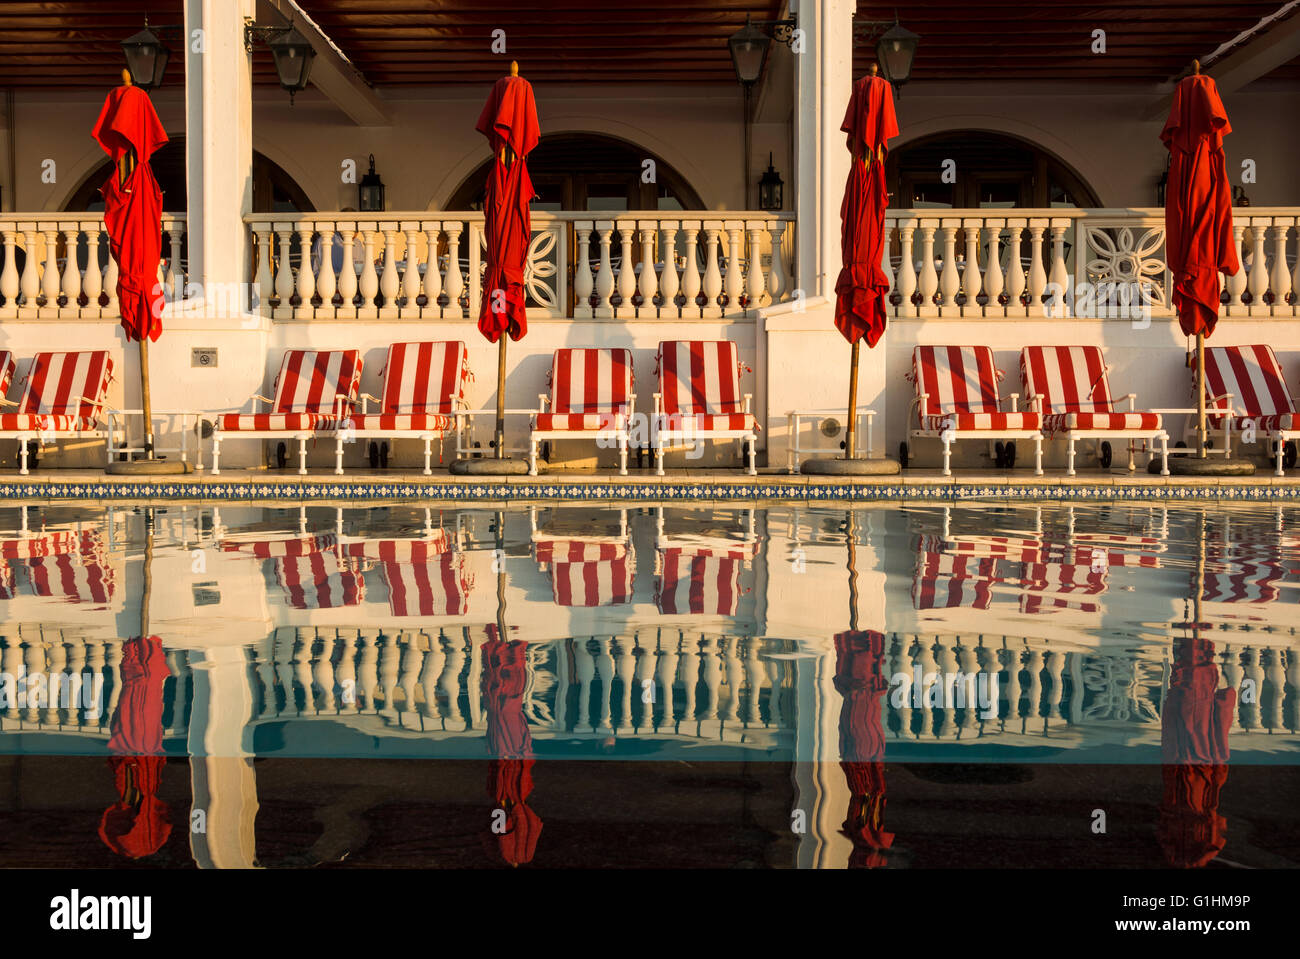 Sonnenliegen und rote Sonnenschirme warten auf Gäste am Pool eines Luxus-Hotels in Durban, KwaZulu Natal, Südafrika Stockfoto